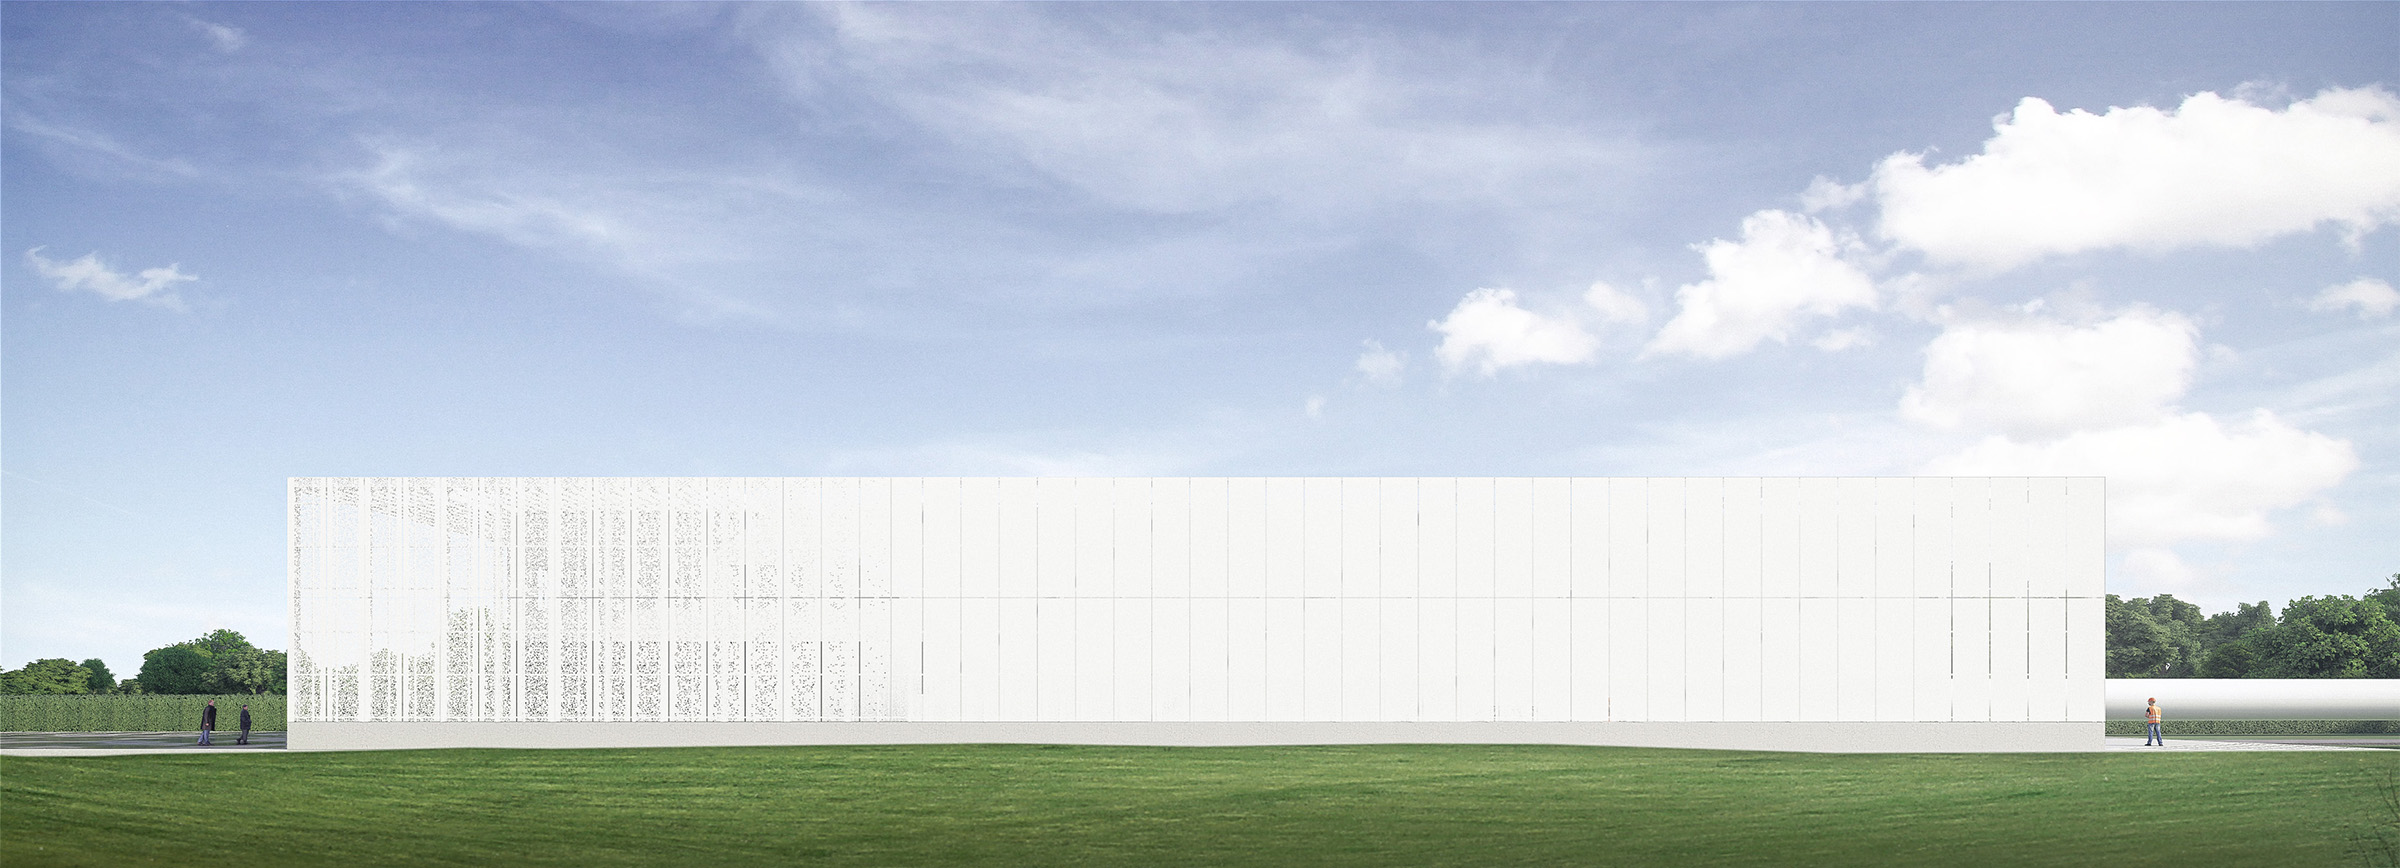 Perspective vue façade uniforme en métal blanc perforé, bâtiment rectangulaire allongé